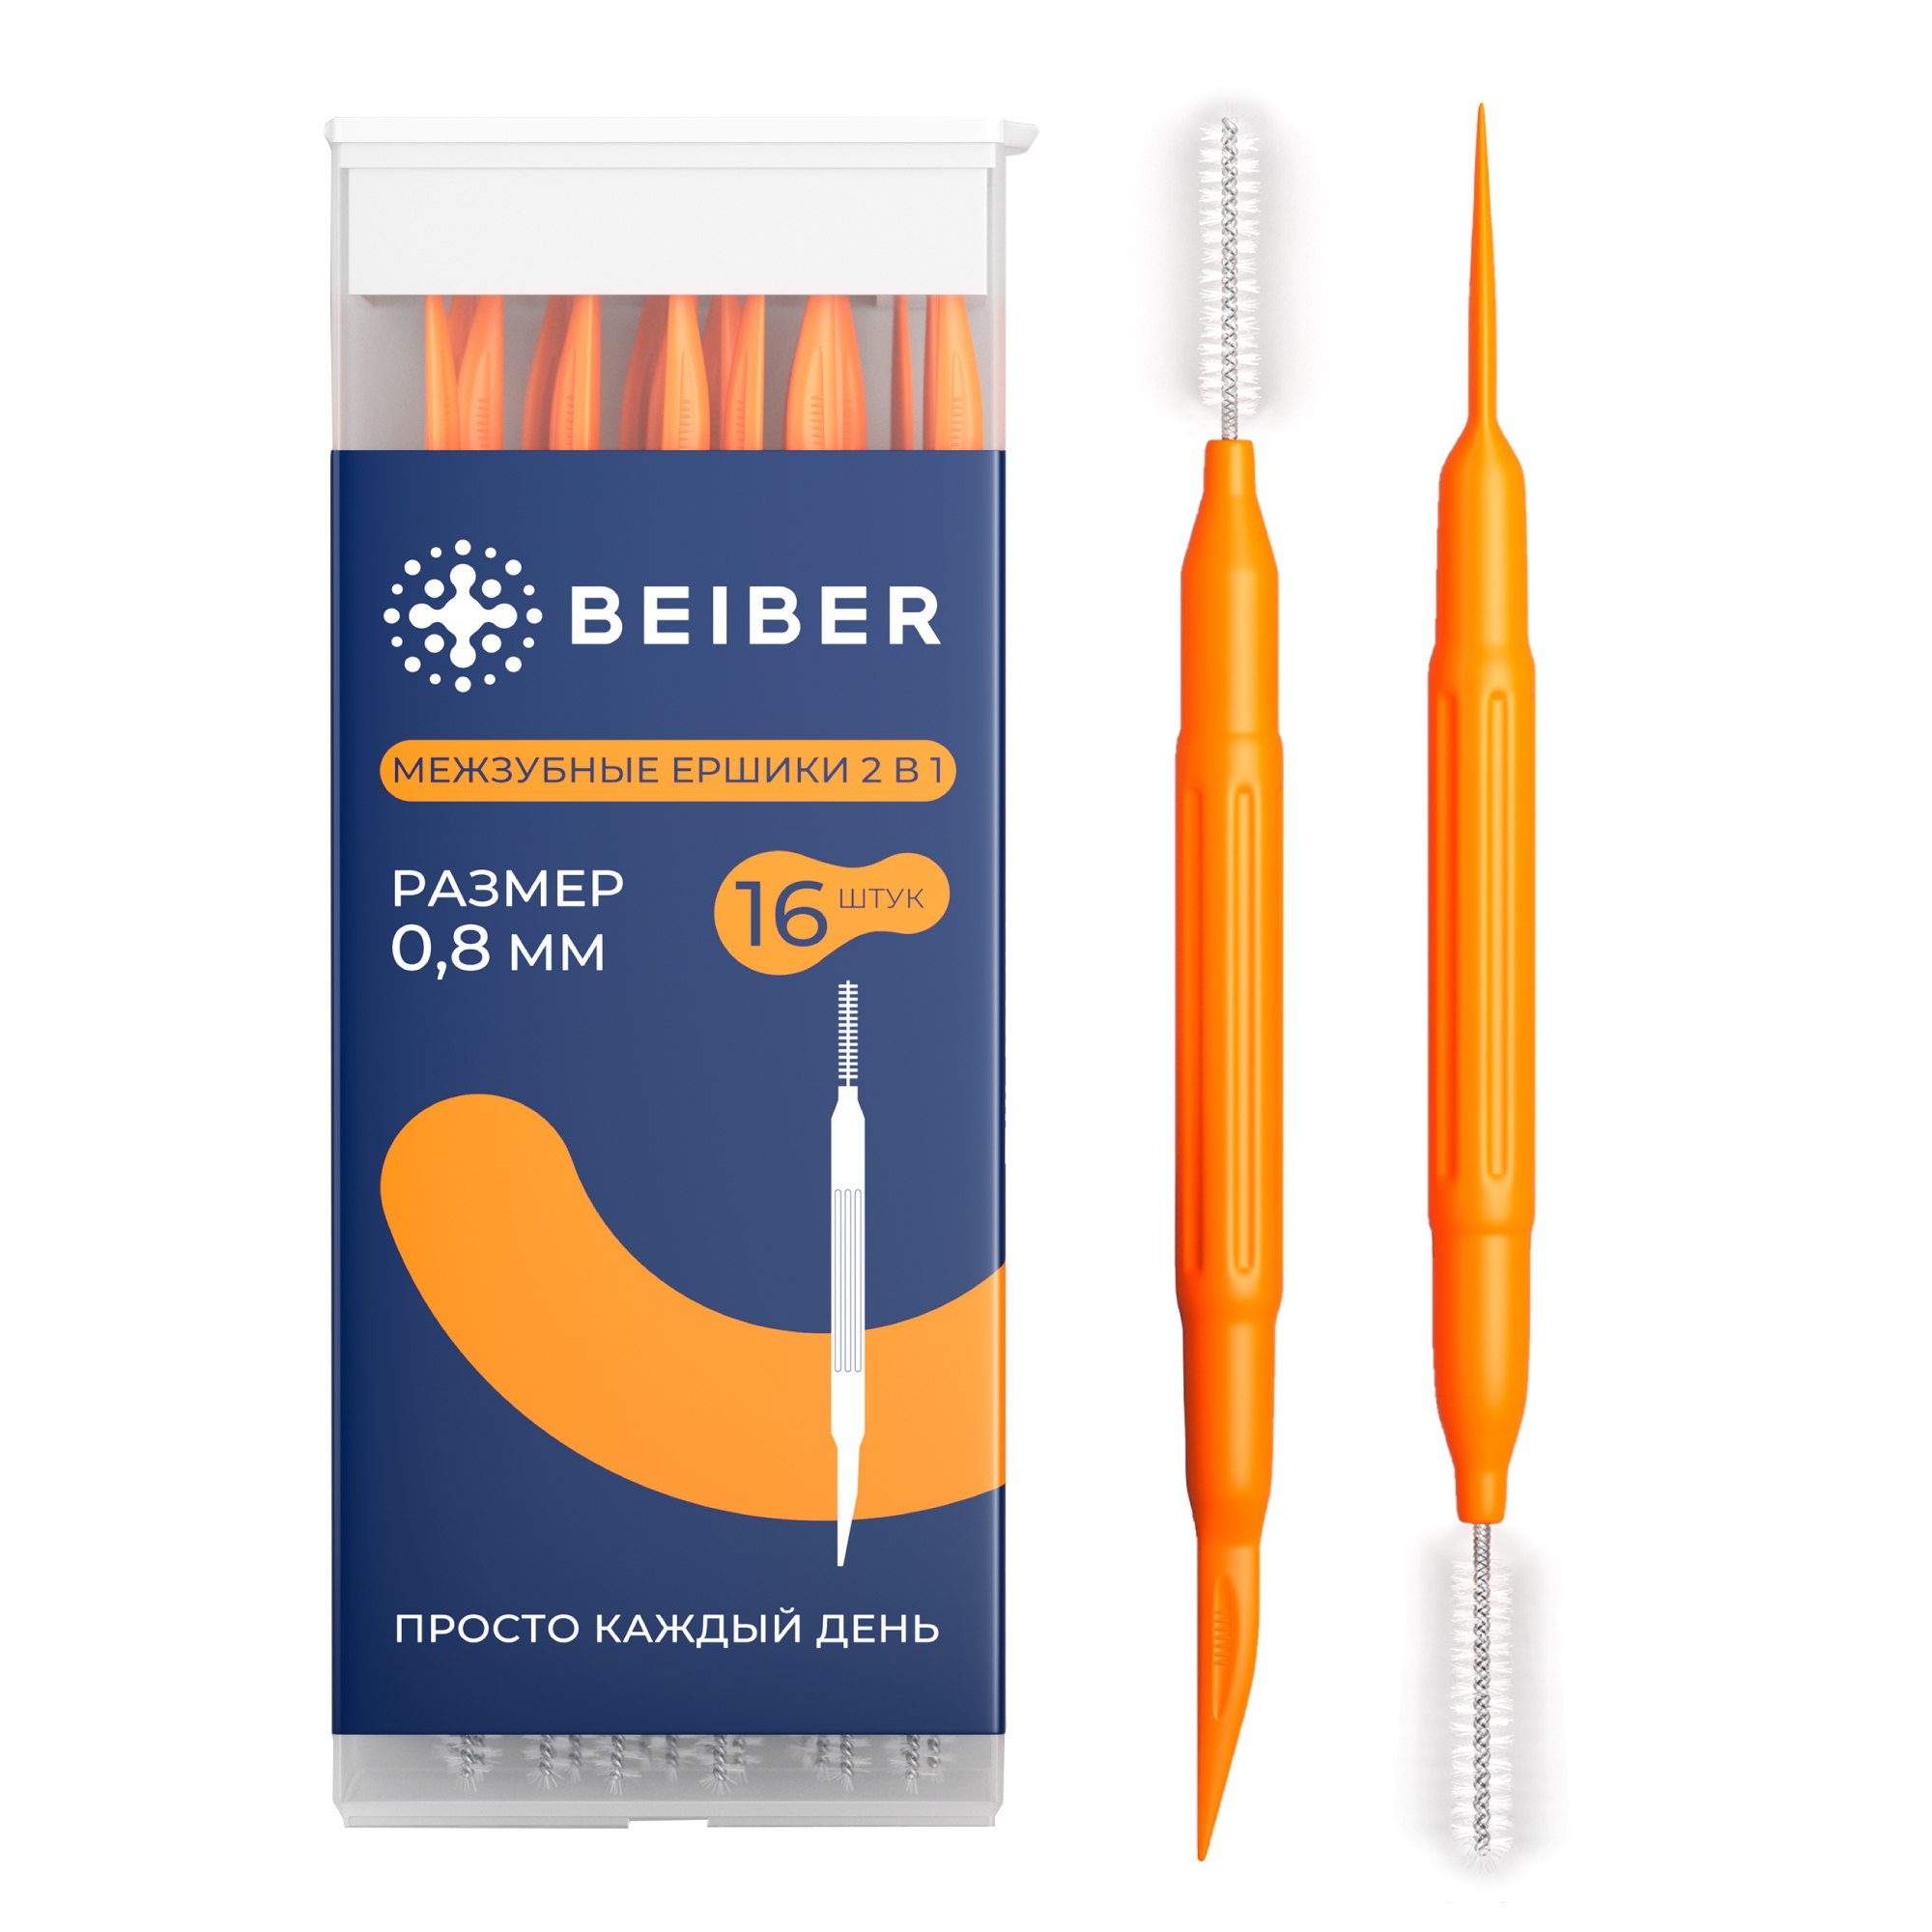 Межзубные ершики BEIBER + зубочистка 16 шт.